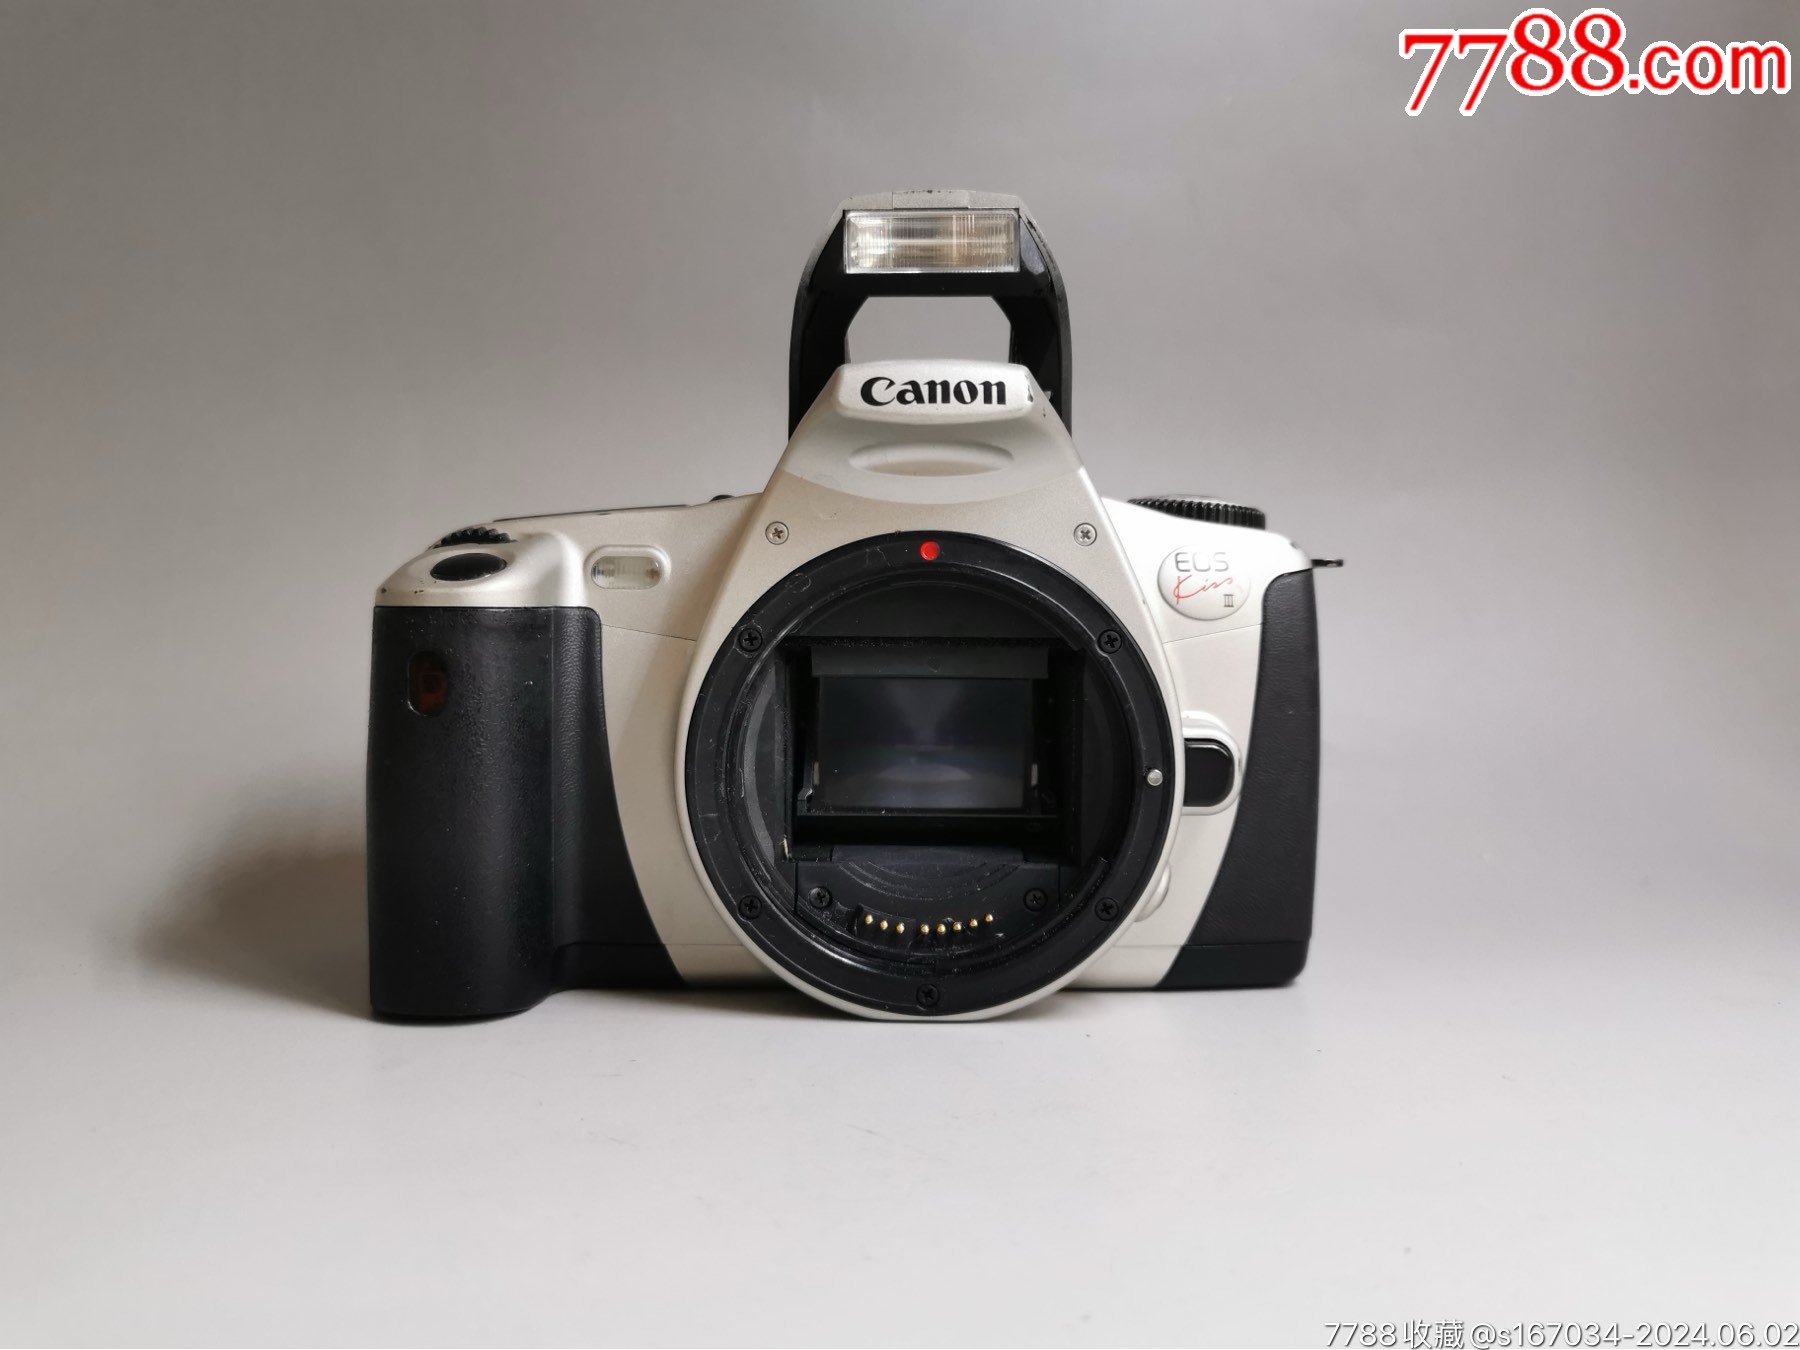 佳能canoneoskiss3,胶片相机,经测试,各项正常,可正常使用,575e